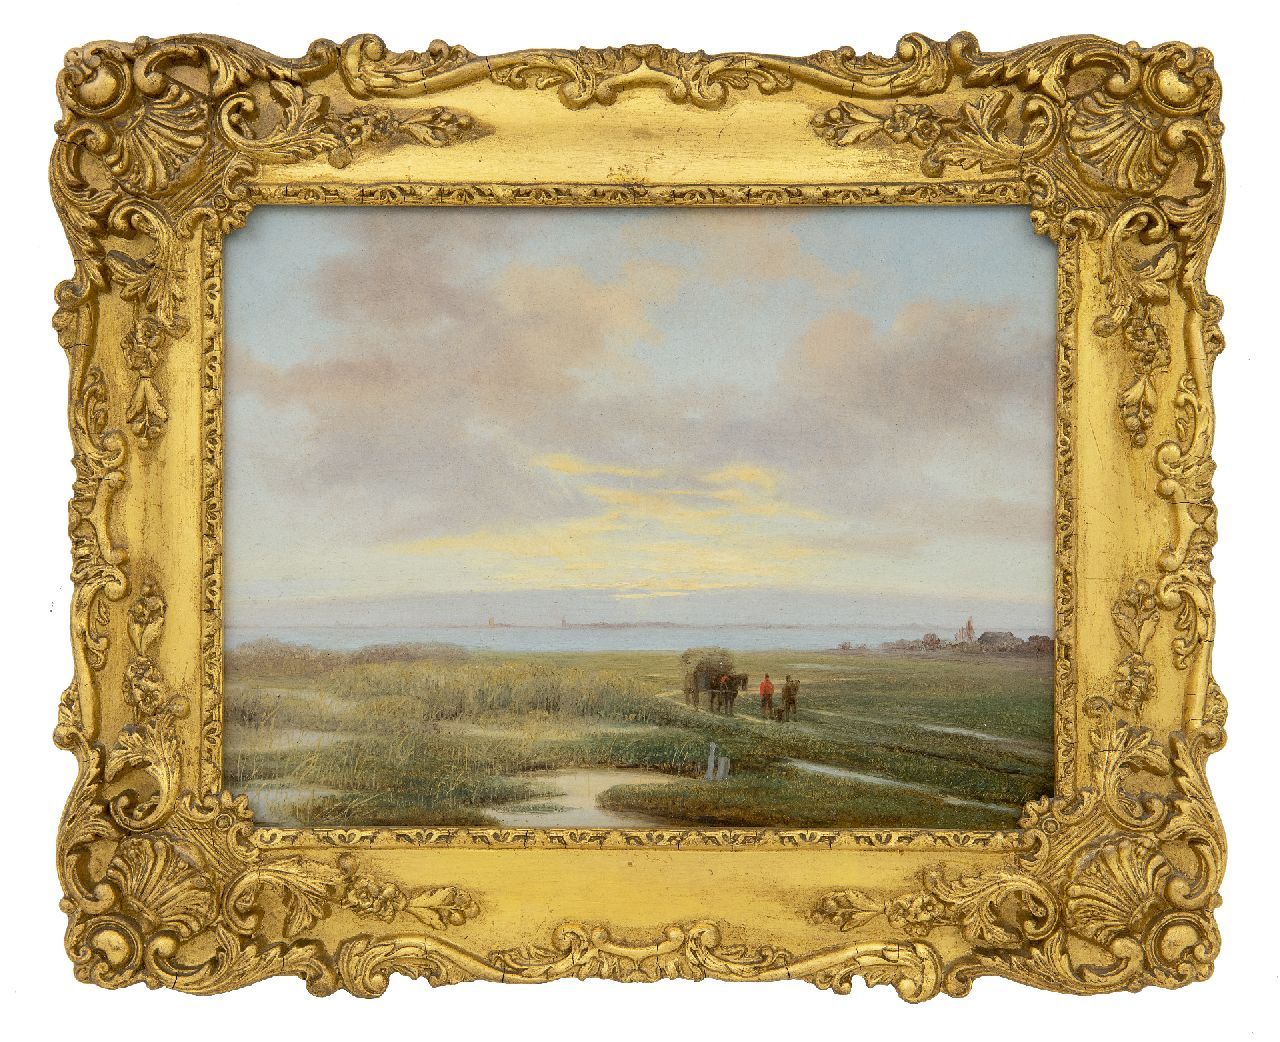 Roosenboom N.J.  | Nicolaas Johannes Roosenboom | Schilderijen te koop aangeboden | Rietsnijders met paard en wagen in weids landschap, olieverf op paneel 20,5 x 27,0 cm, gesigneerd rechtsonder